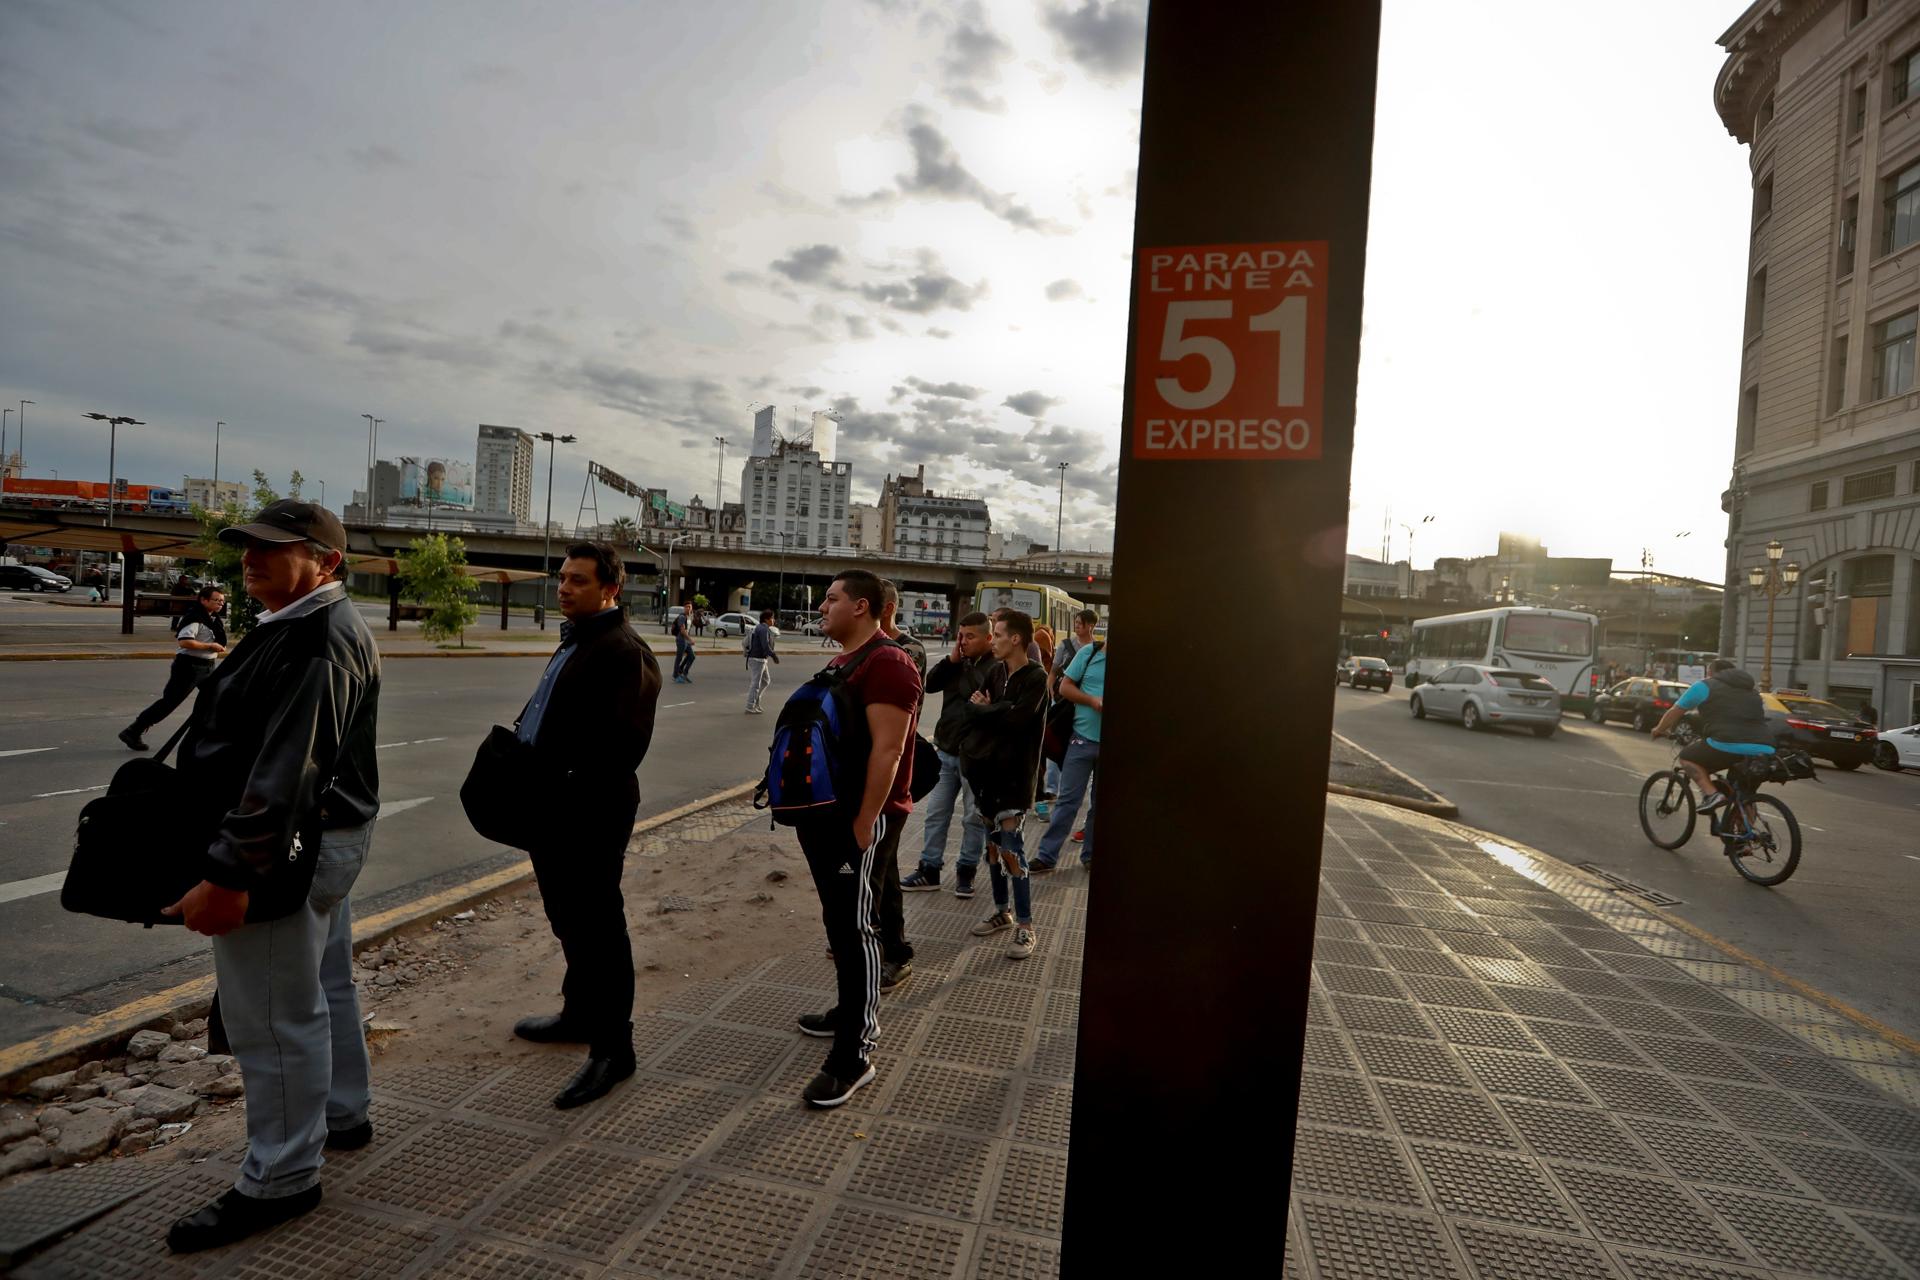 Pasajeros esperan en una parada de autobús, en una fotografía de archivo. EFE/Juan Ignacio Roncoroni